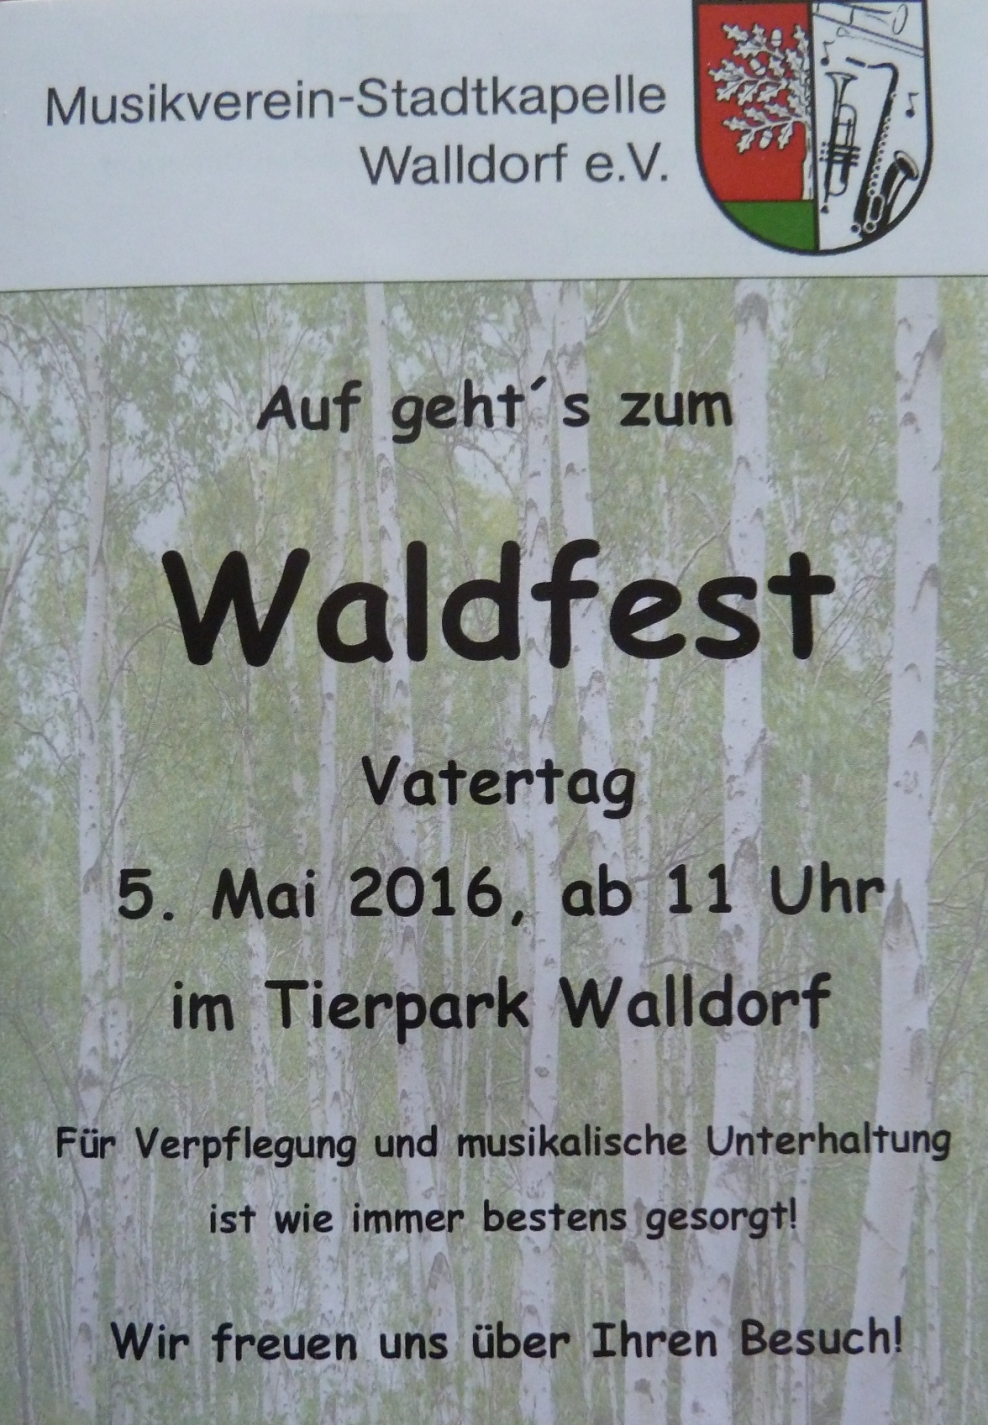 Waldfest im Tierpark Walldorf am Vatertag